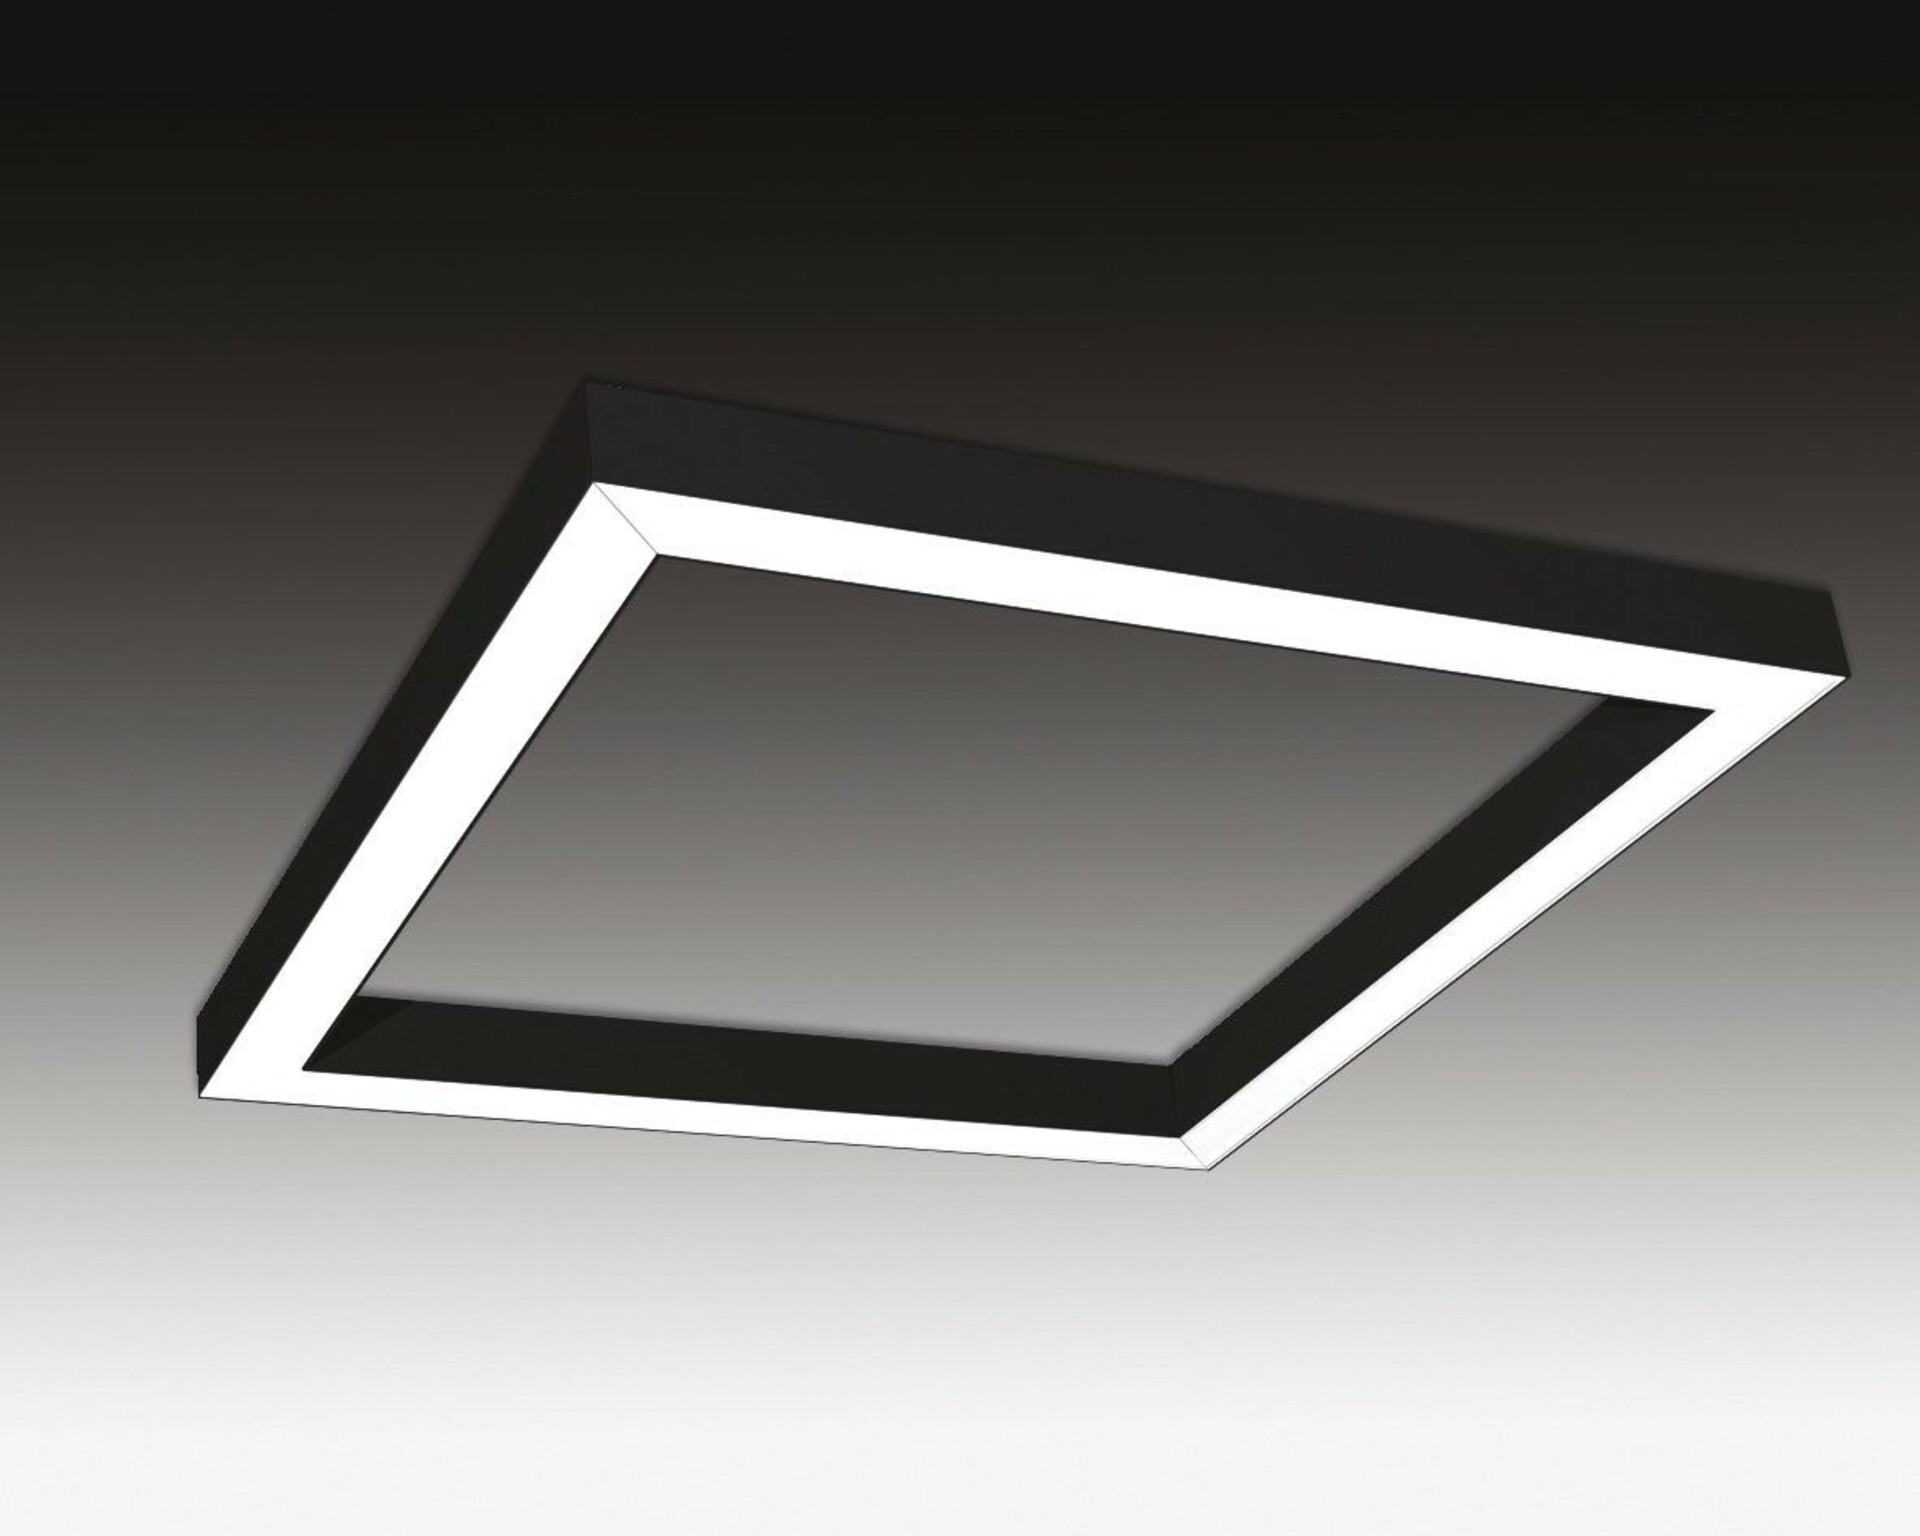 SEC Závěsné LED svítidlo nepřímé osvětlení WEGA-FRAME2-AA-DIM-DALI, 32 W, černá, 607 x 607 x 50 mm, 3000 K, 4360 lm 321-B-001-01-02-SP